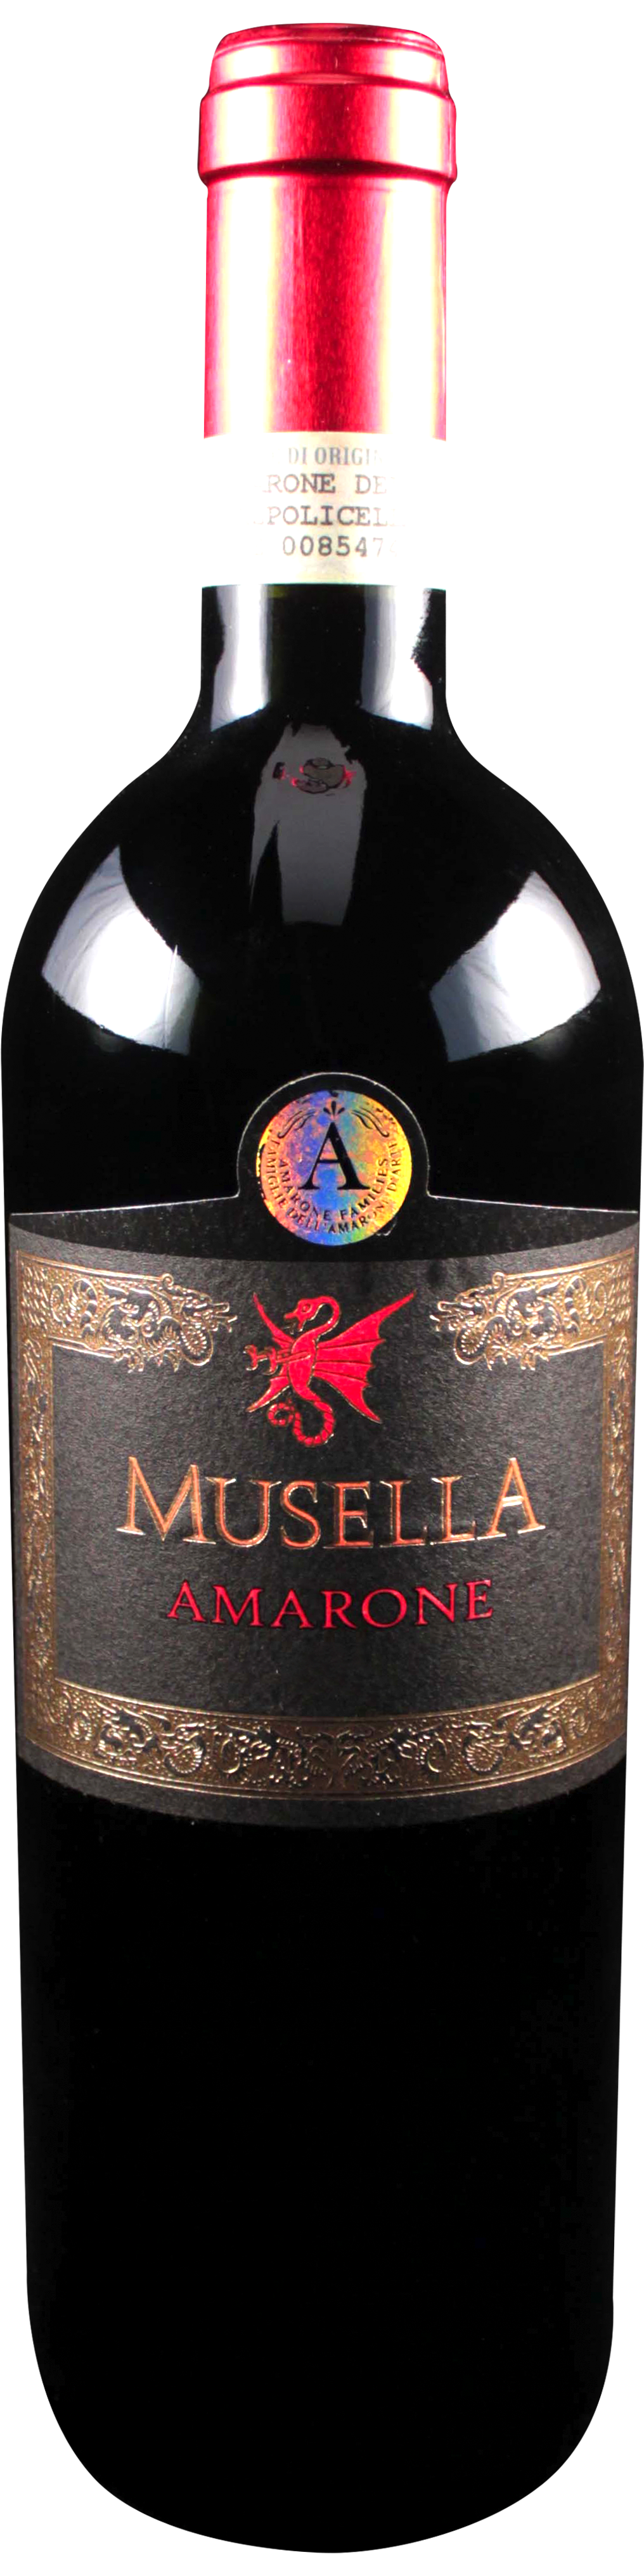 Bottle shot of 2009 Amarone